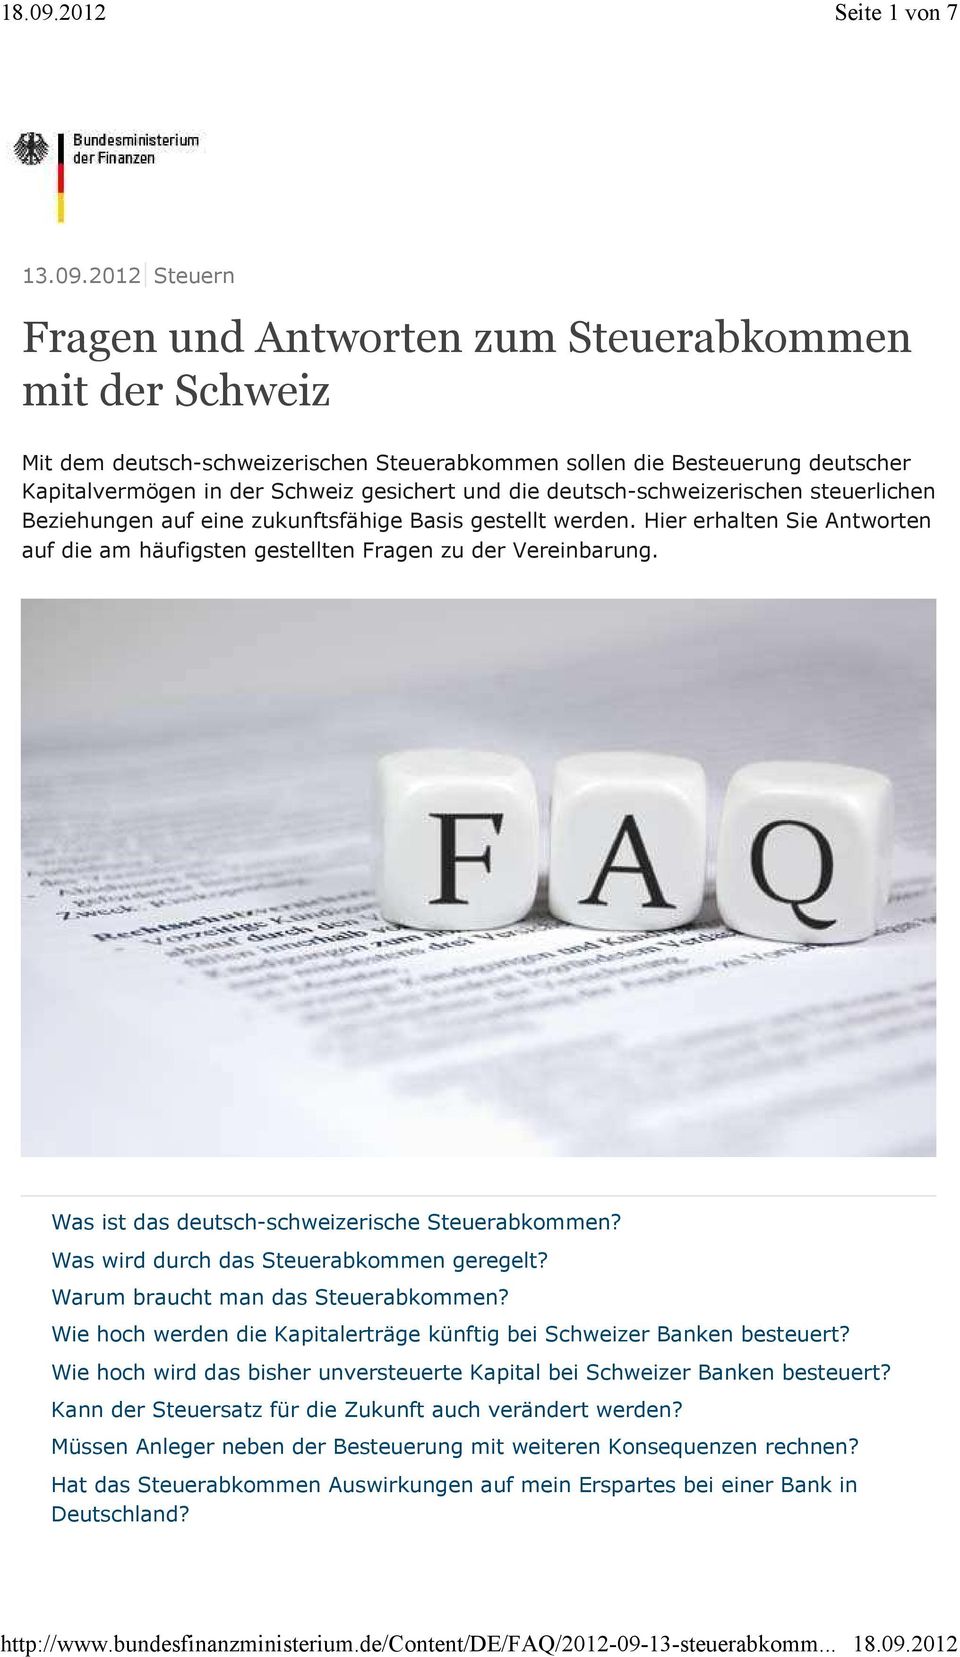 deutsch-schweizerischen steuerlichen Beziehungen auf eine zukunftsfähige Basis gestellt werden. Hier erhalten Sie Antworten auf die am häufigsten gestellten Fragen zu der Vereinbarung.